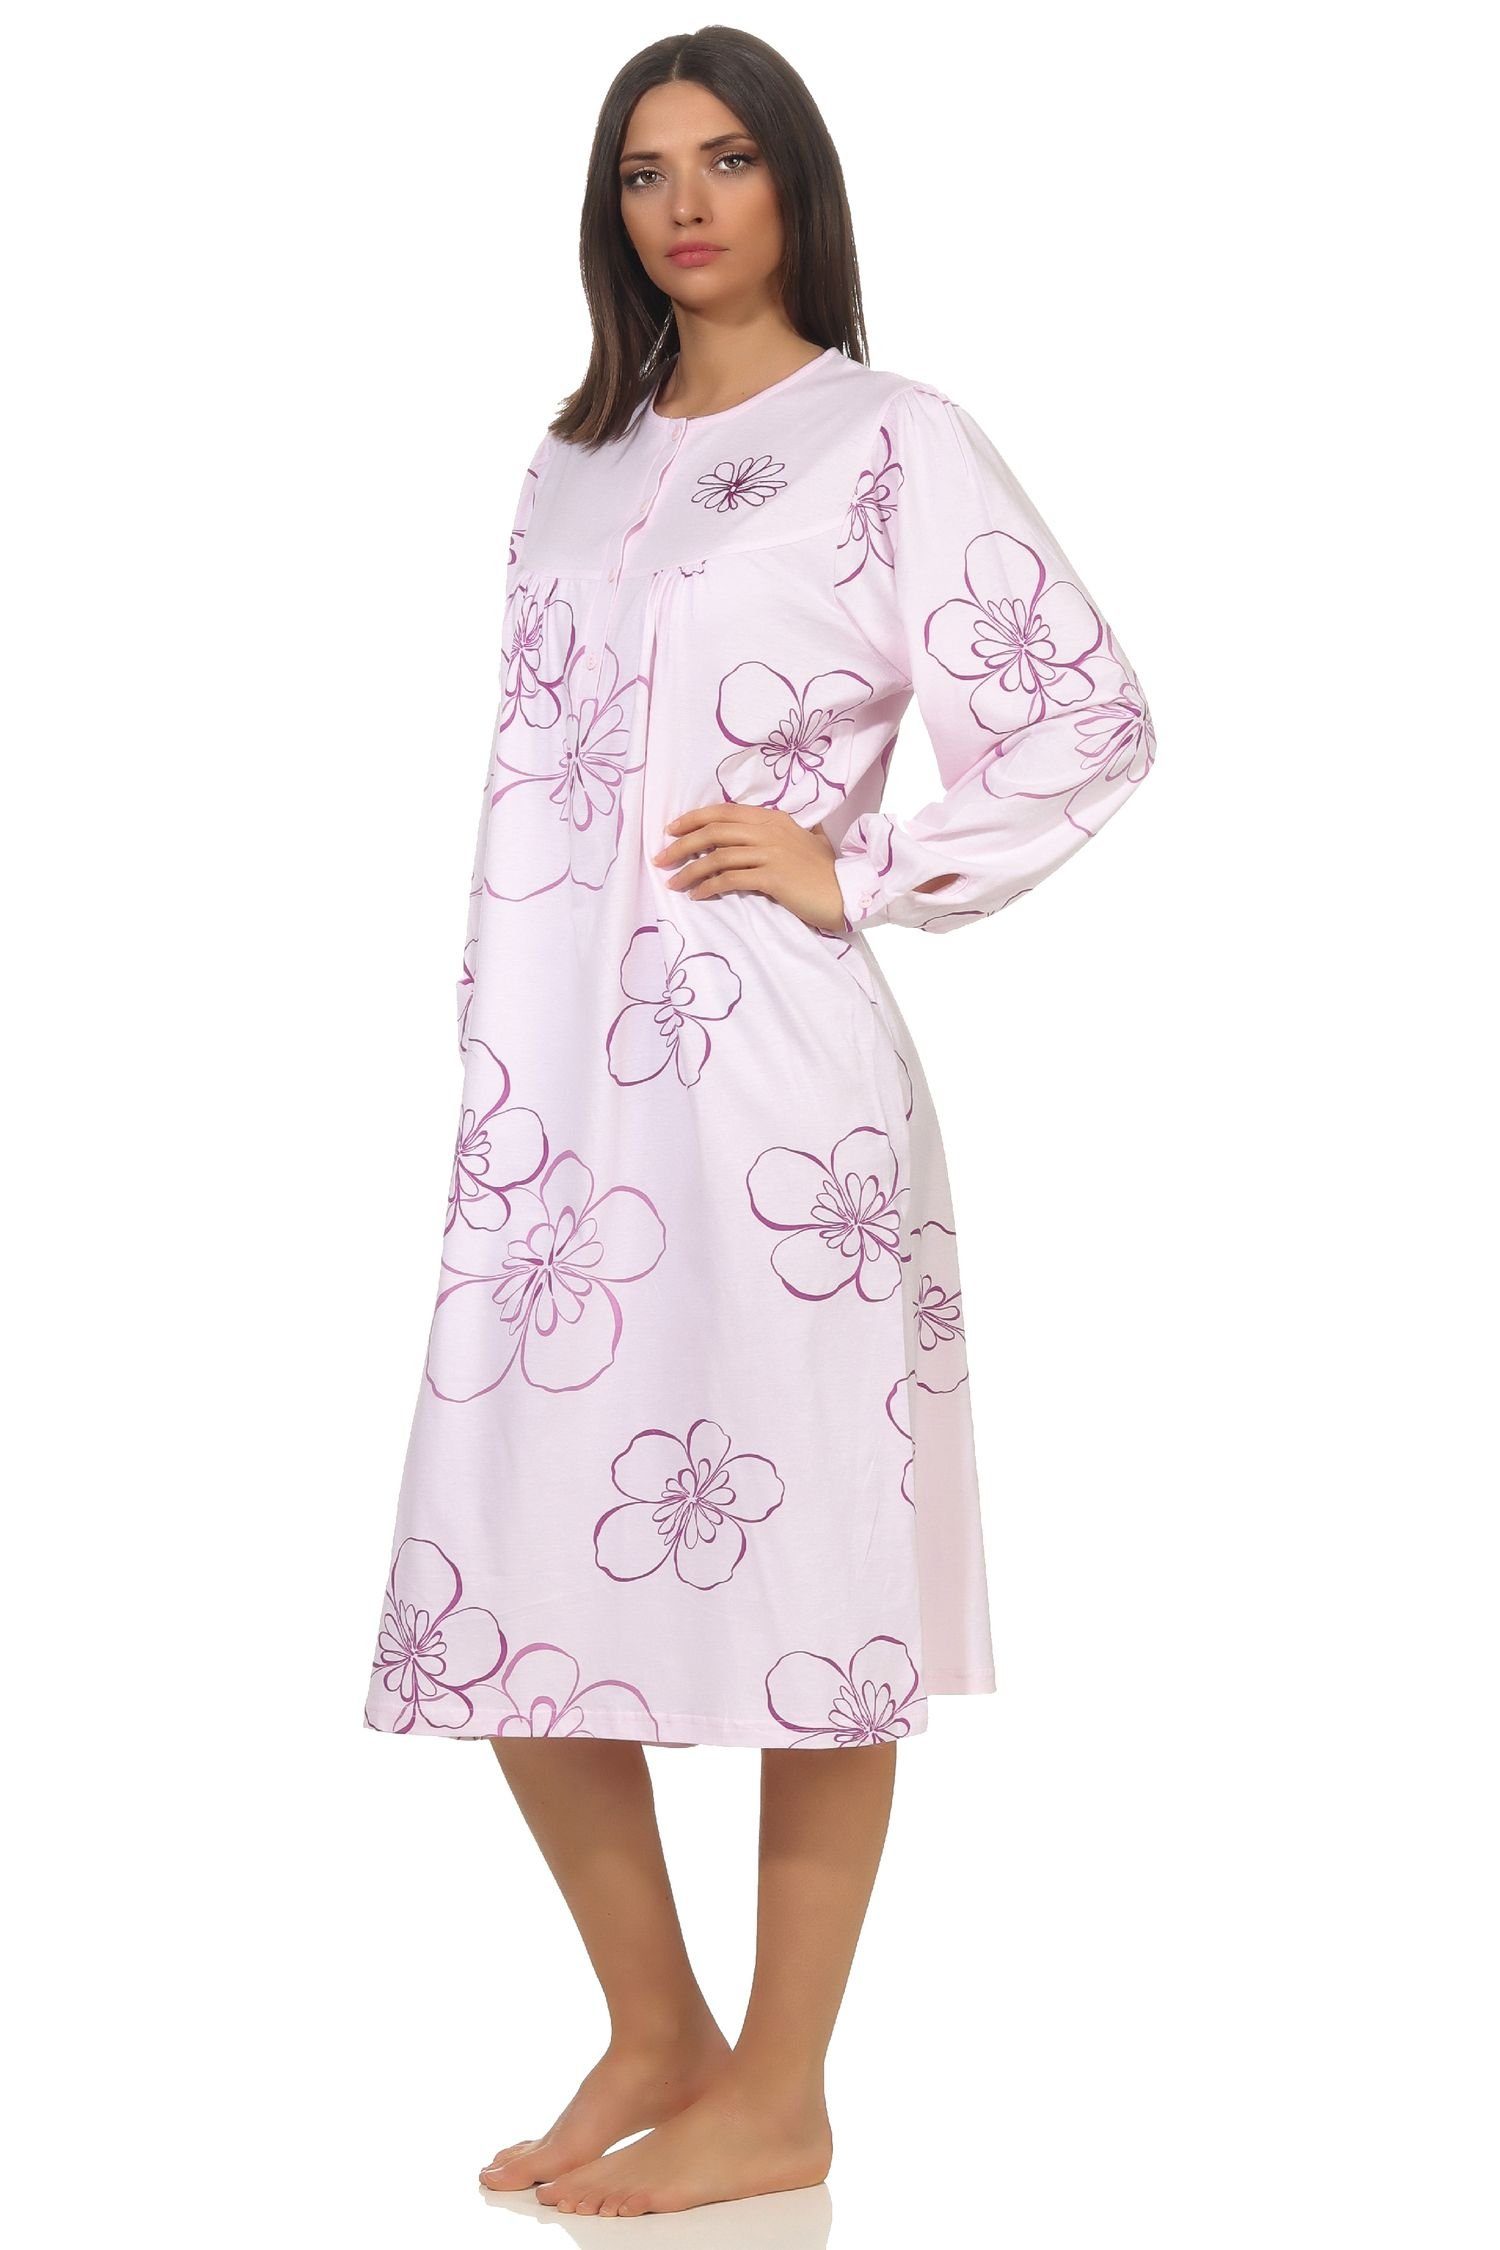 Normann Nachthemd Frauliches Damen Nachthemd,cm Knopfleiste 314 202 am Länge, Hals rosa 